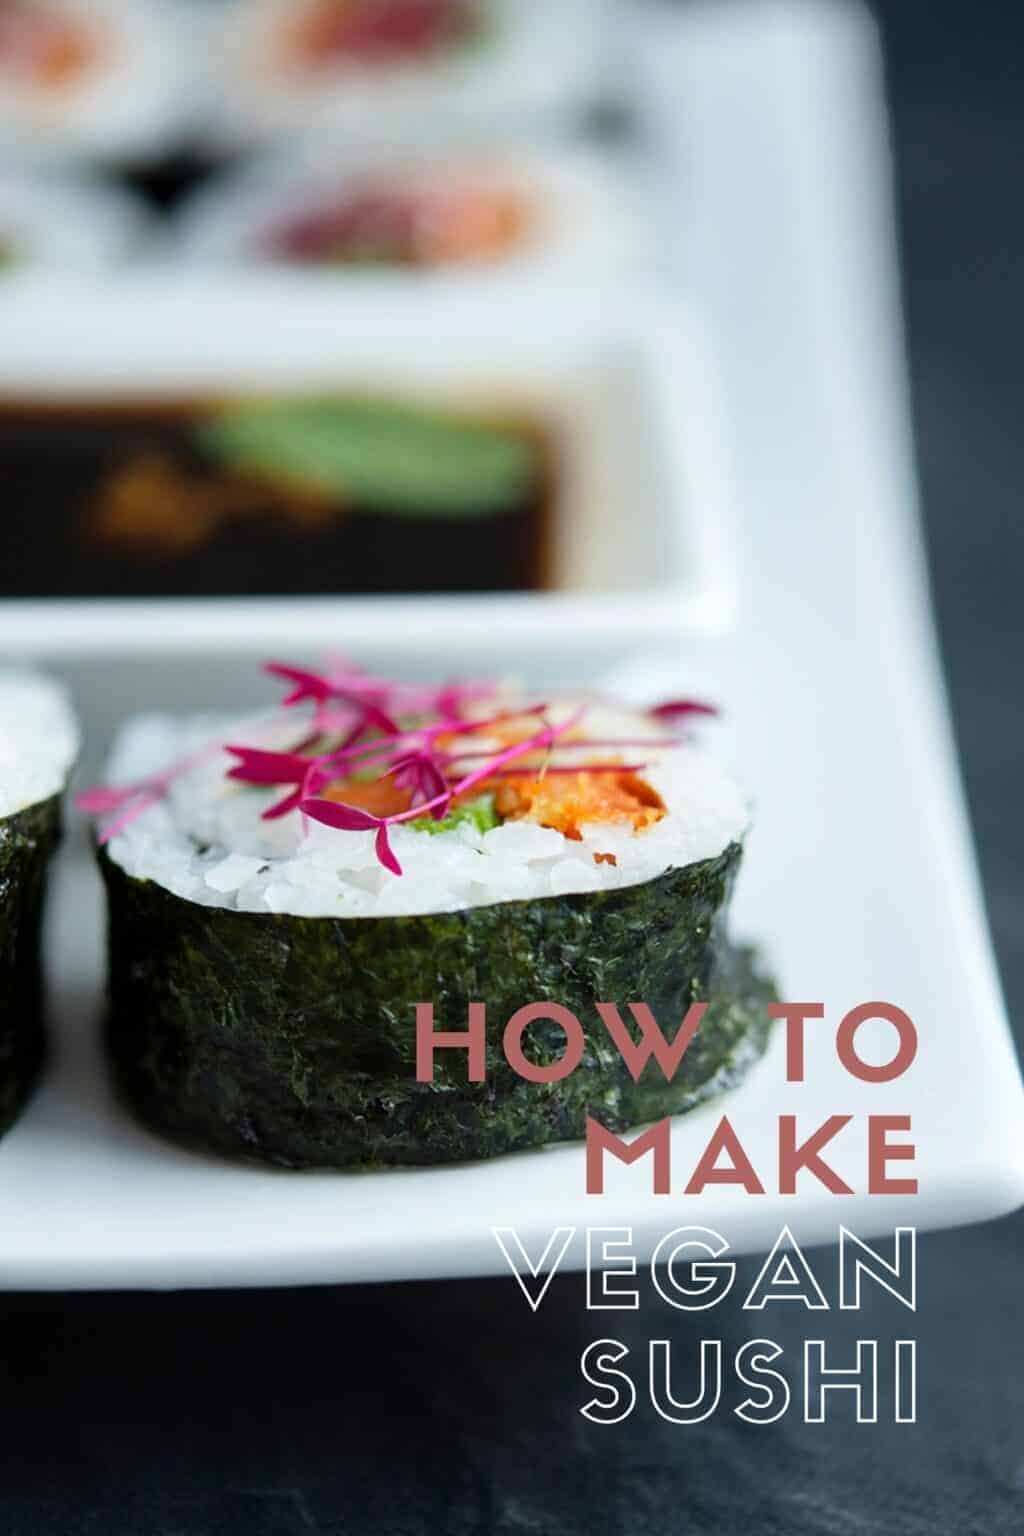 Vegan Sushi: Vegan Sushi Rolls & Bowls Recipes - Vegan Recipes